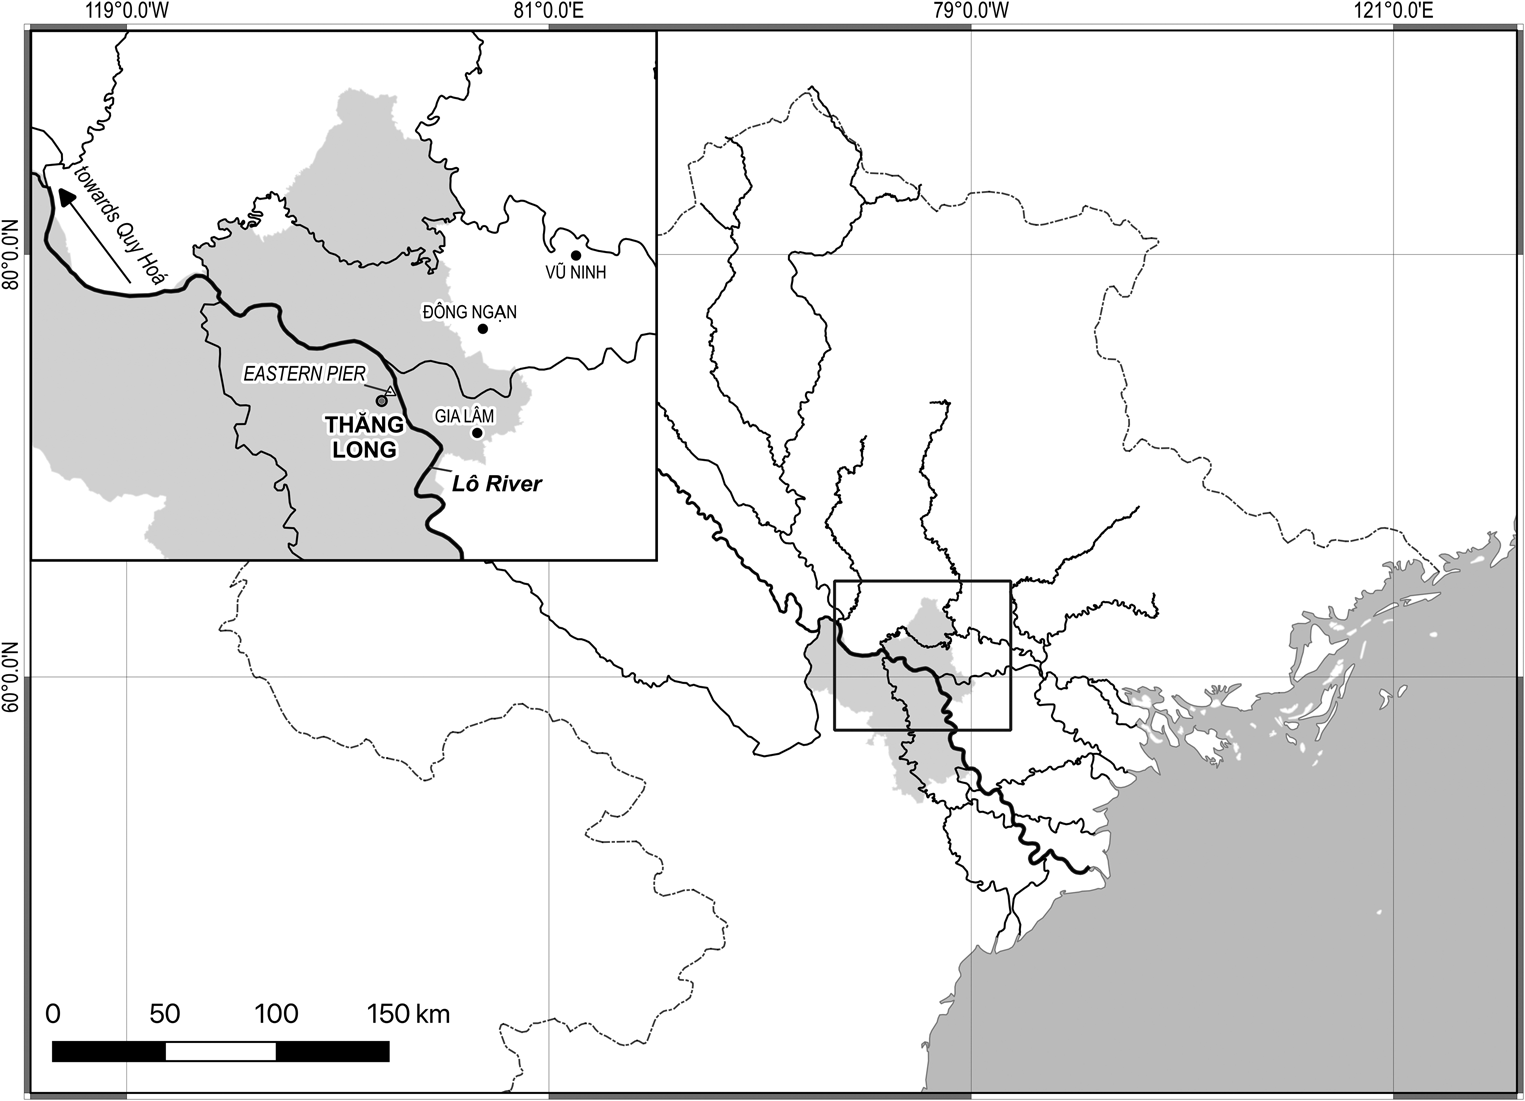 Định danh sông Hồng có thể giúp bạn tìm hiểu về sông Hồng, một trong những con sông chính của Việt Nam. Tìm hiểu về định danh sông Hồng sẽ giúp bạn đọc hiểu sâu hơn về lịch sử và văn hóa của khu vực miền bắc. Thăng hoa kiến thức của bạn bằng cách xem hình liên quan đến định danh sông Hồng.